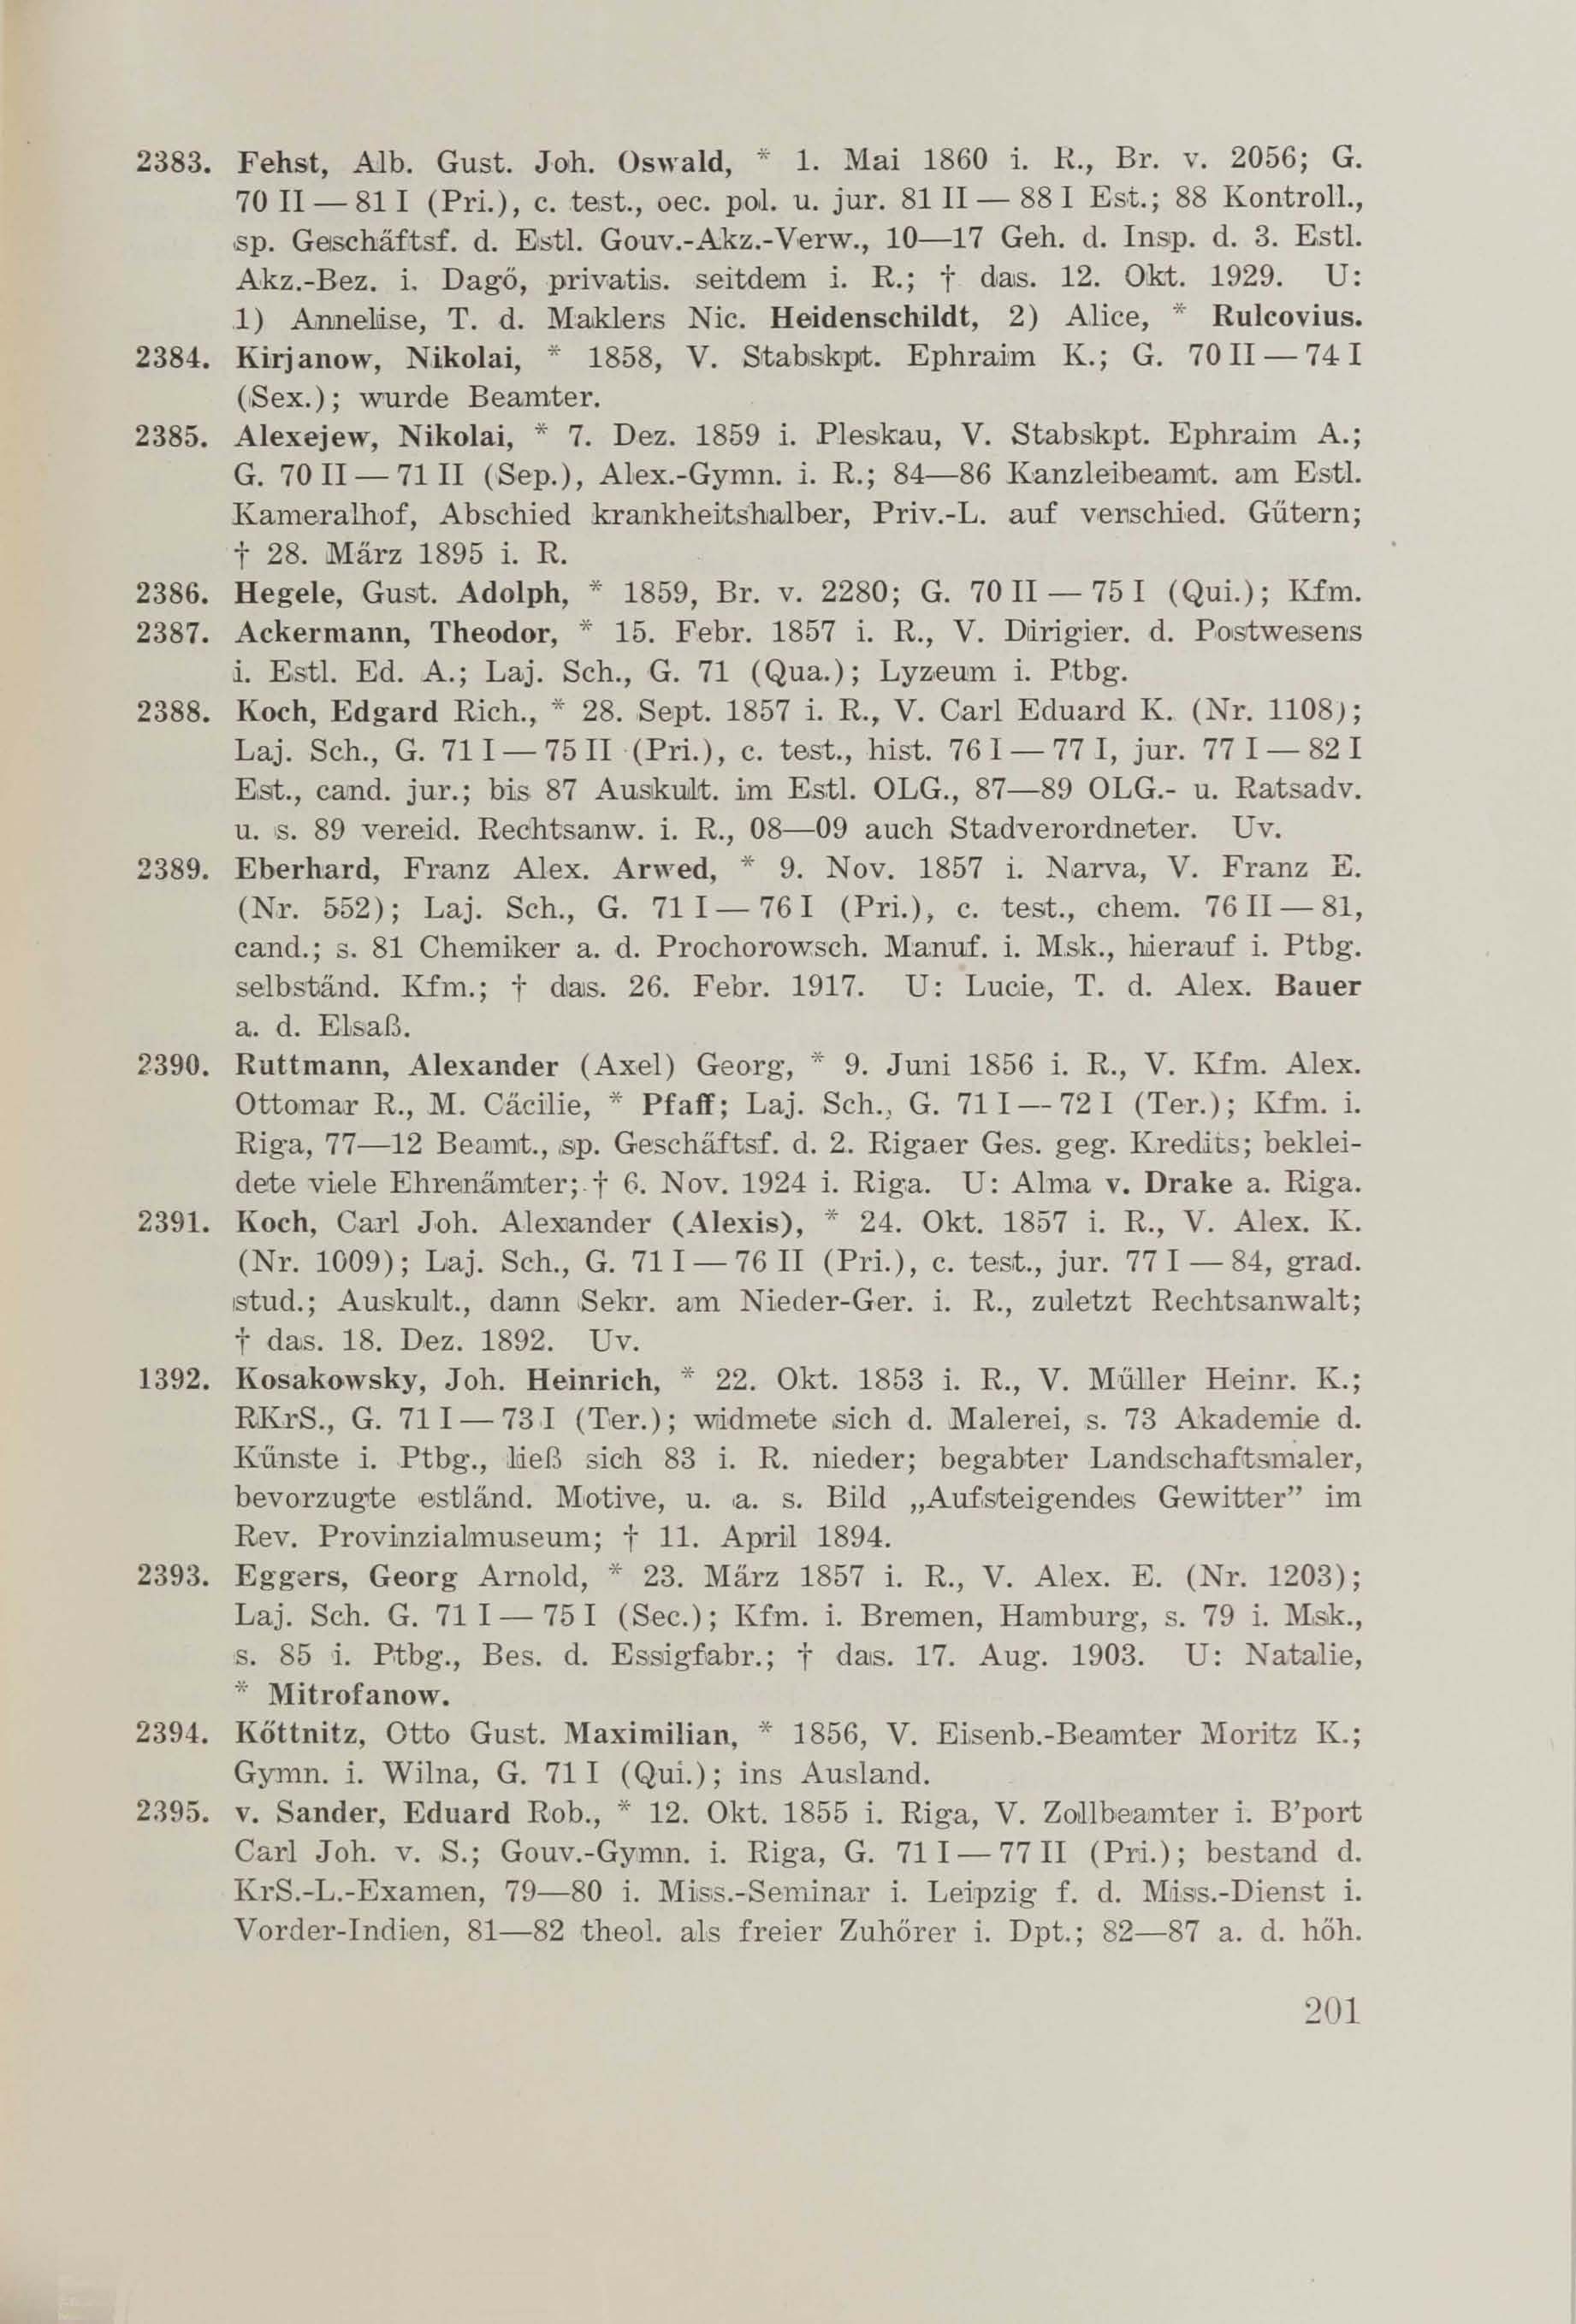 Schüler-Verzeichnis des Revalschen Gouvernements-Gymnasiums 1805–1890 (1931) | 211. (201) Haupttext